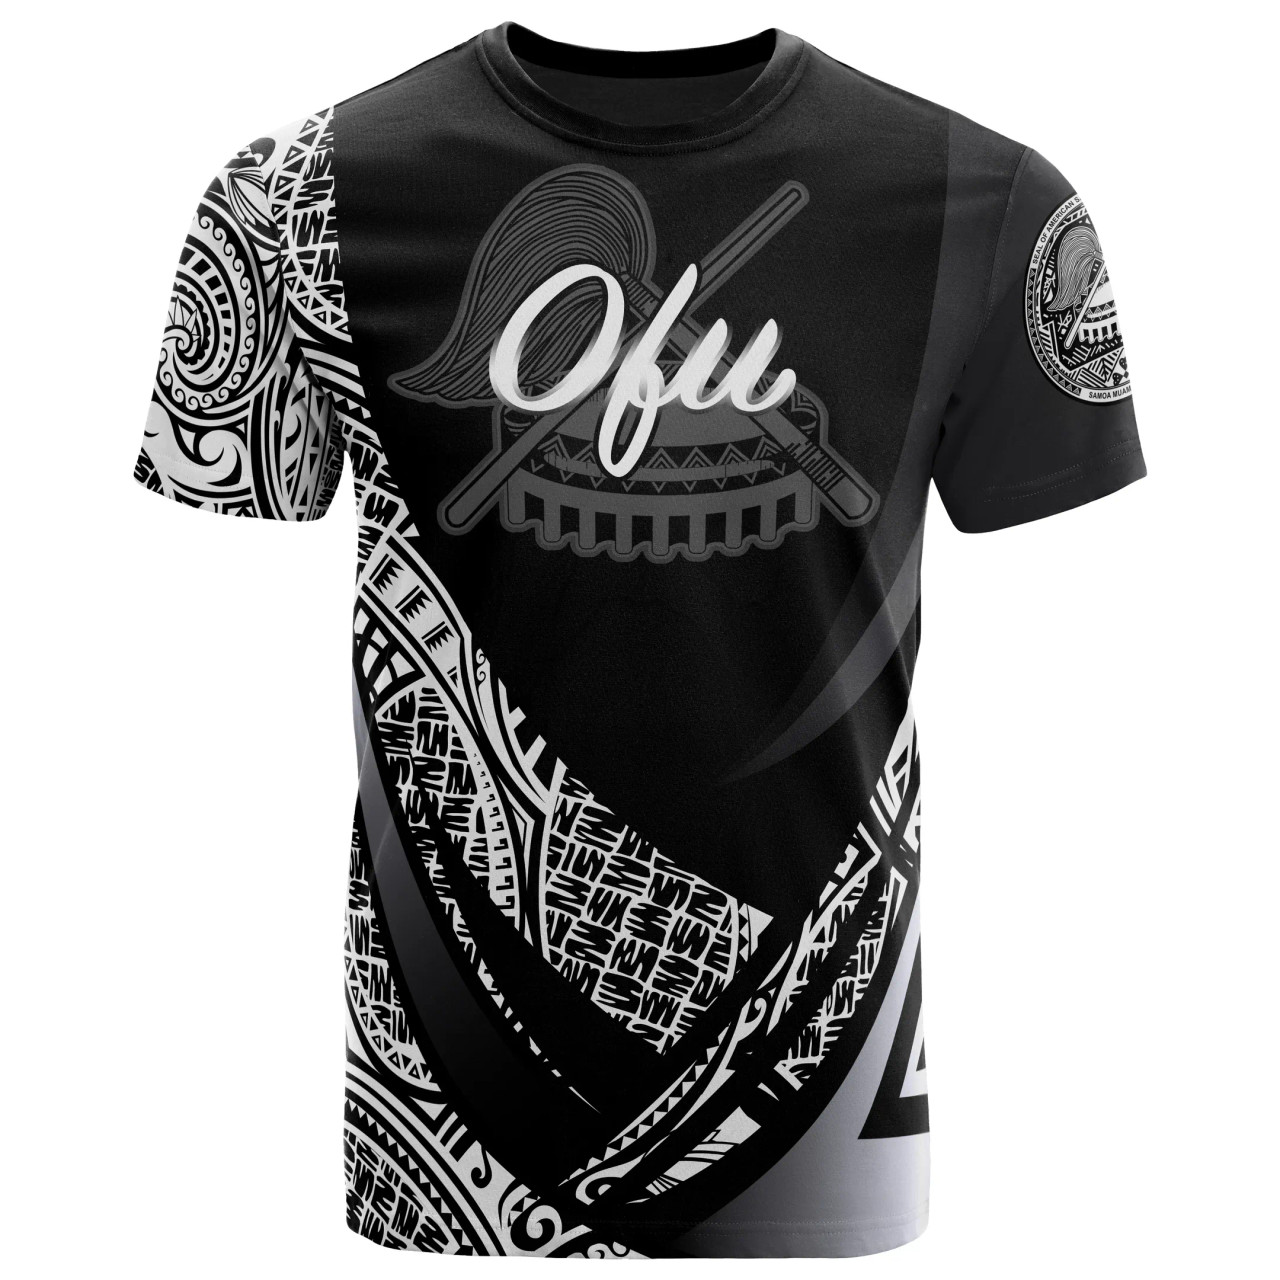 American Samoa T-Shirt - Manu'a Ofu Polynesian Patterns Sport Style 1